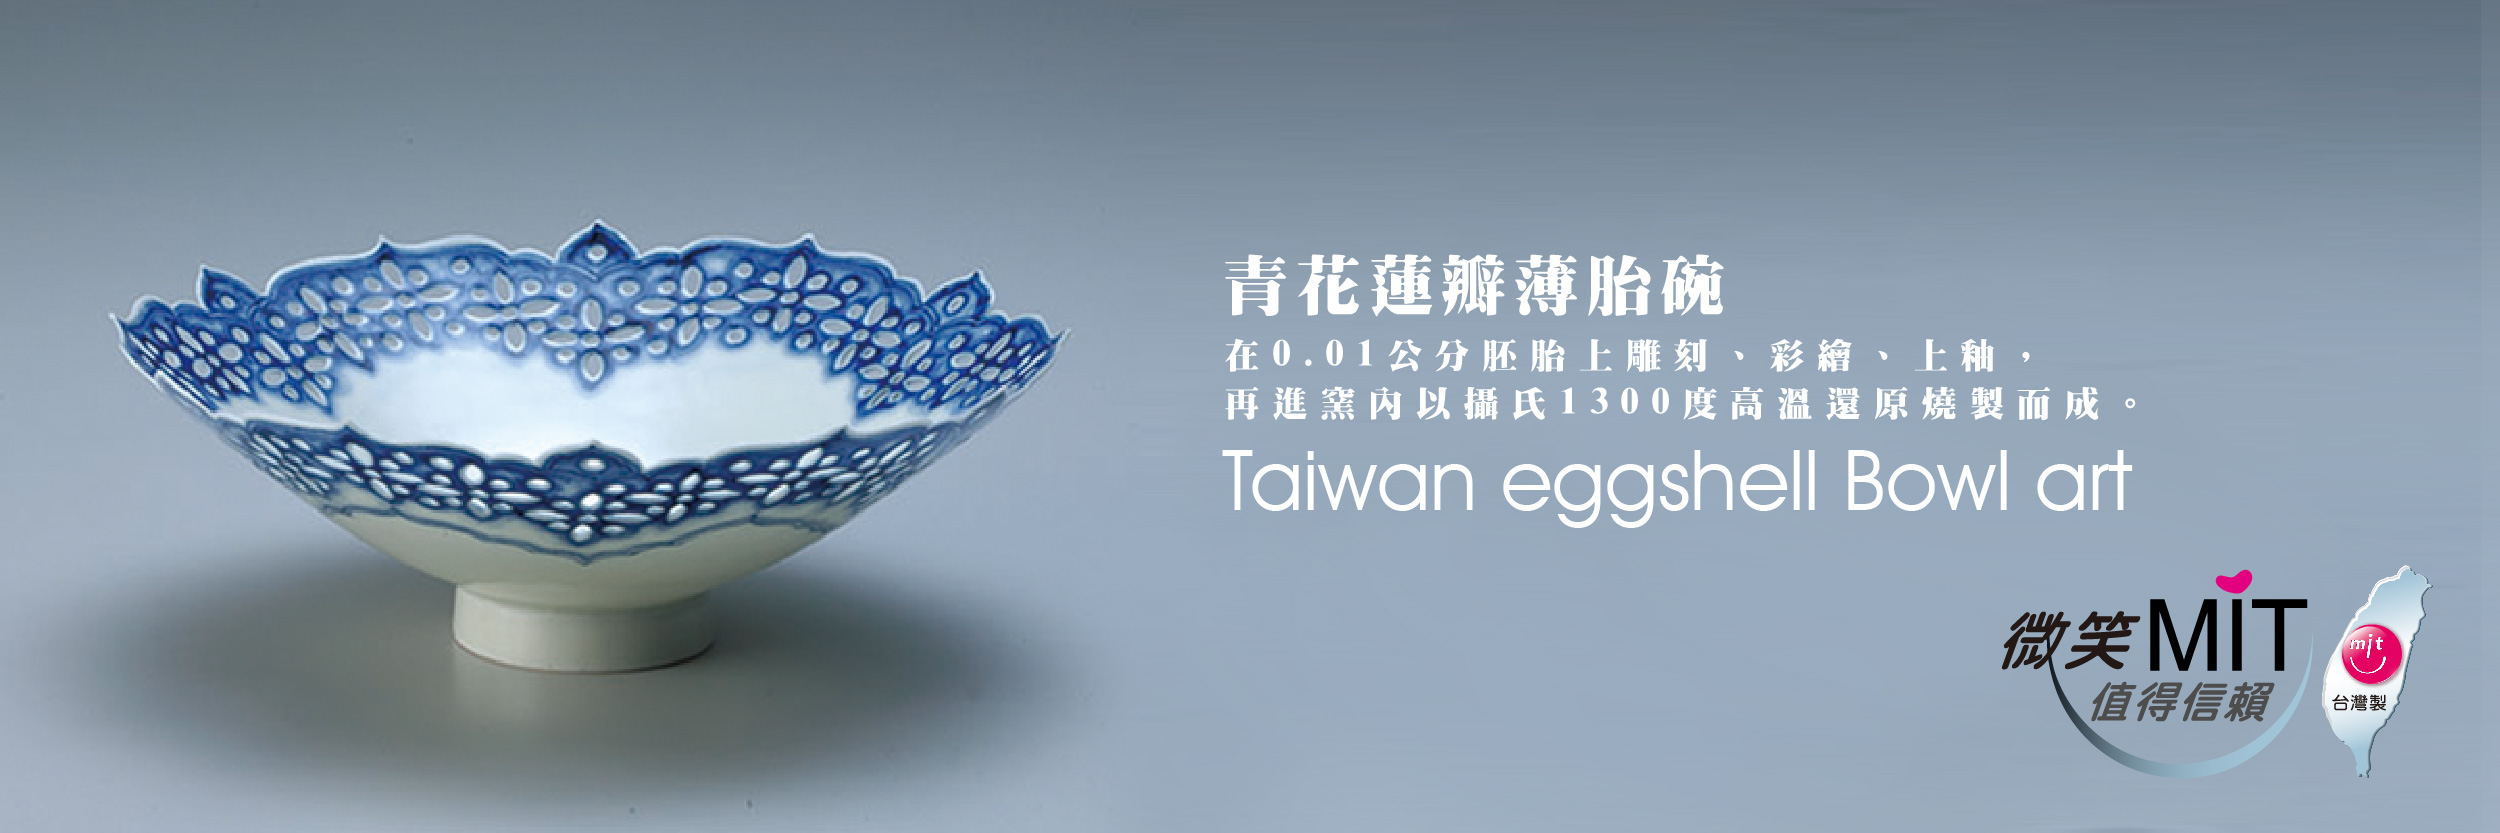 【微笑台灣MIT認證金選】存仁堂 青花蓮瓣薄胎碗 Taiwan Eggshell Bowl Art